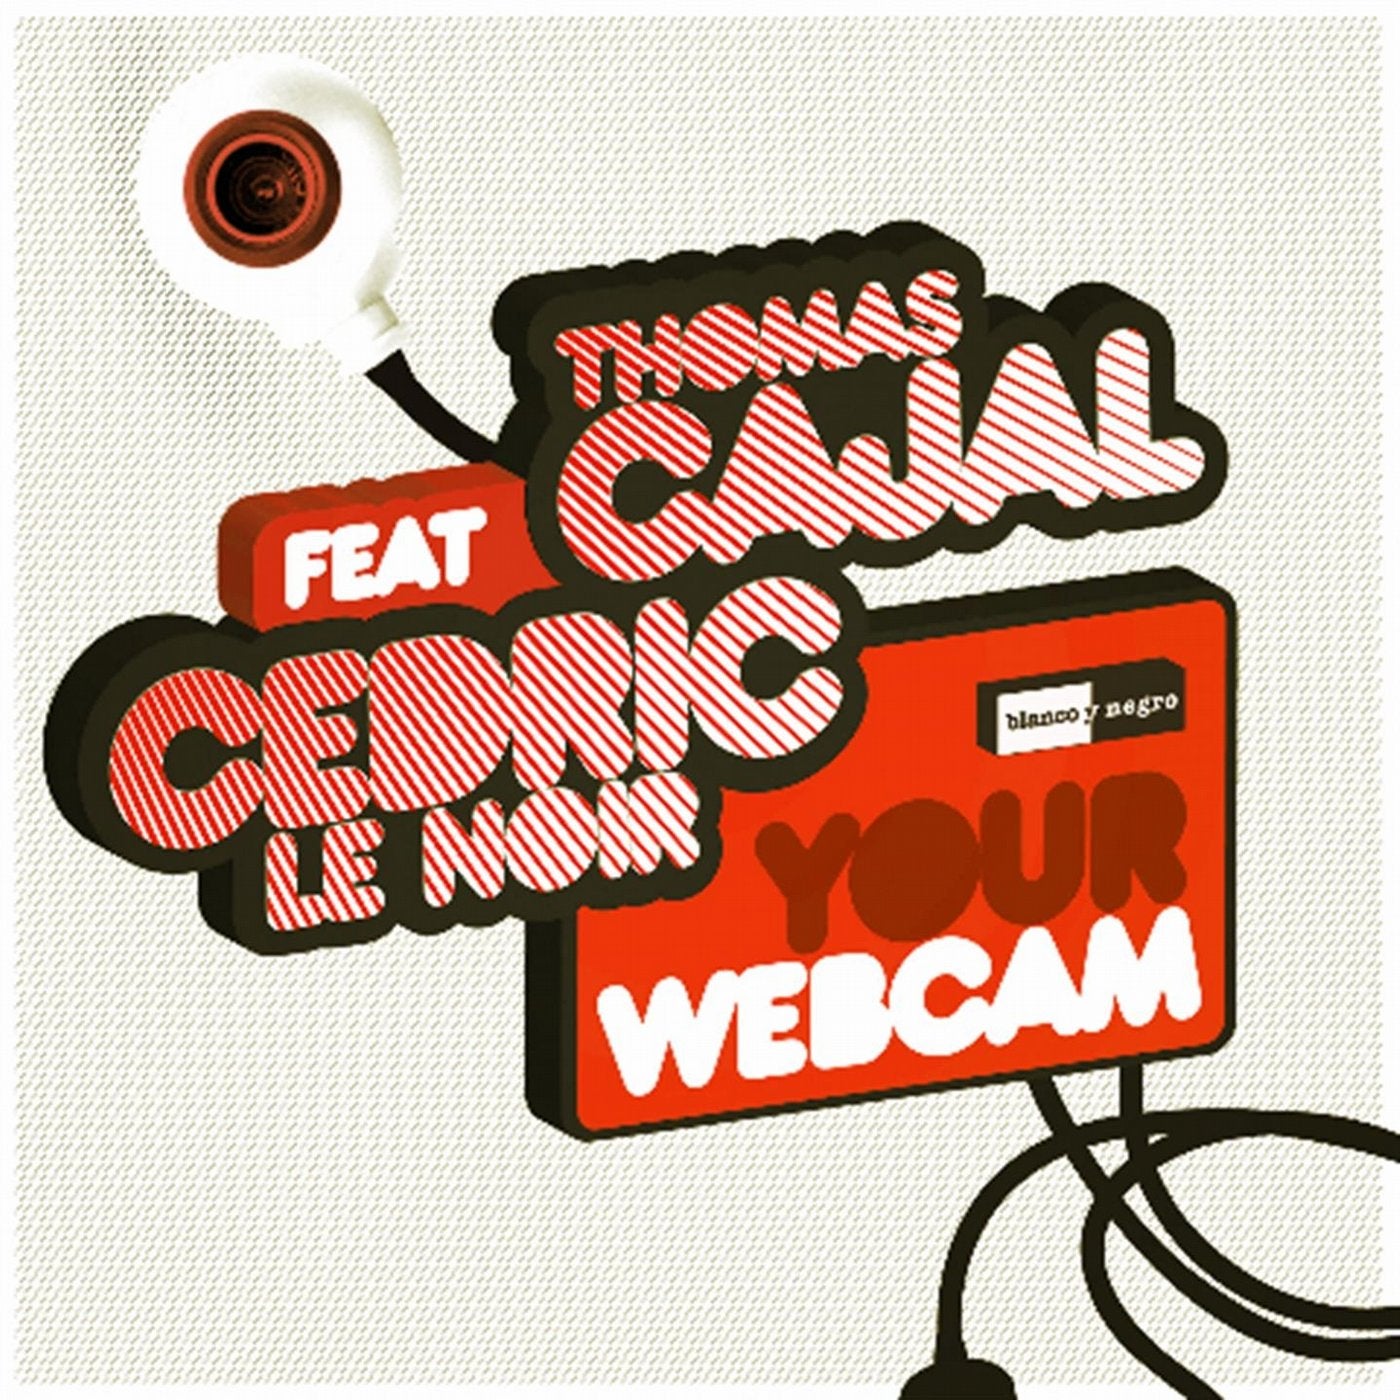 Your Webcam (feat. Cedric Le Noir)